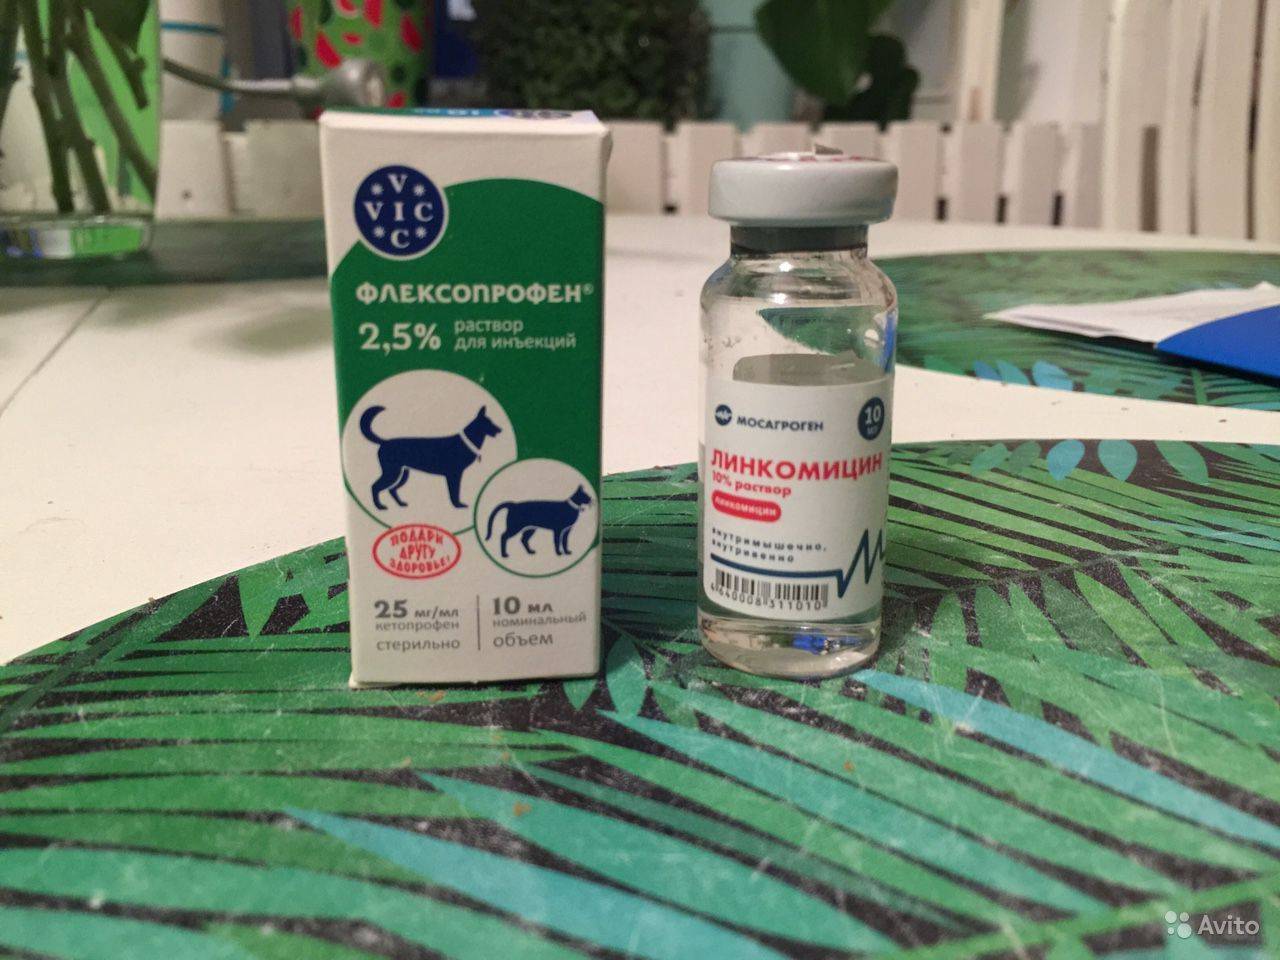 Ветеринарный препарат | флексопрофен 10% от вик